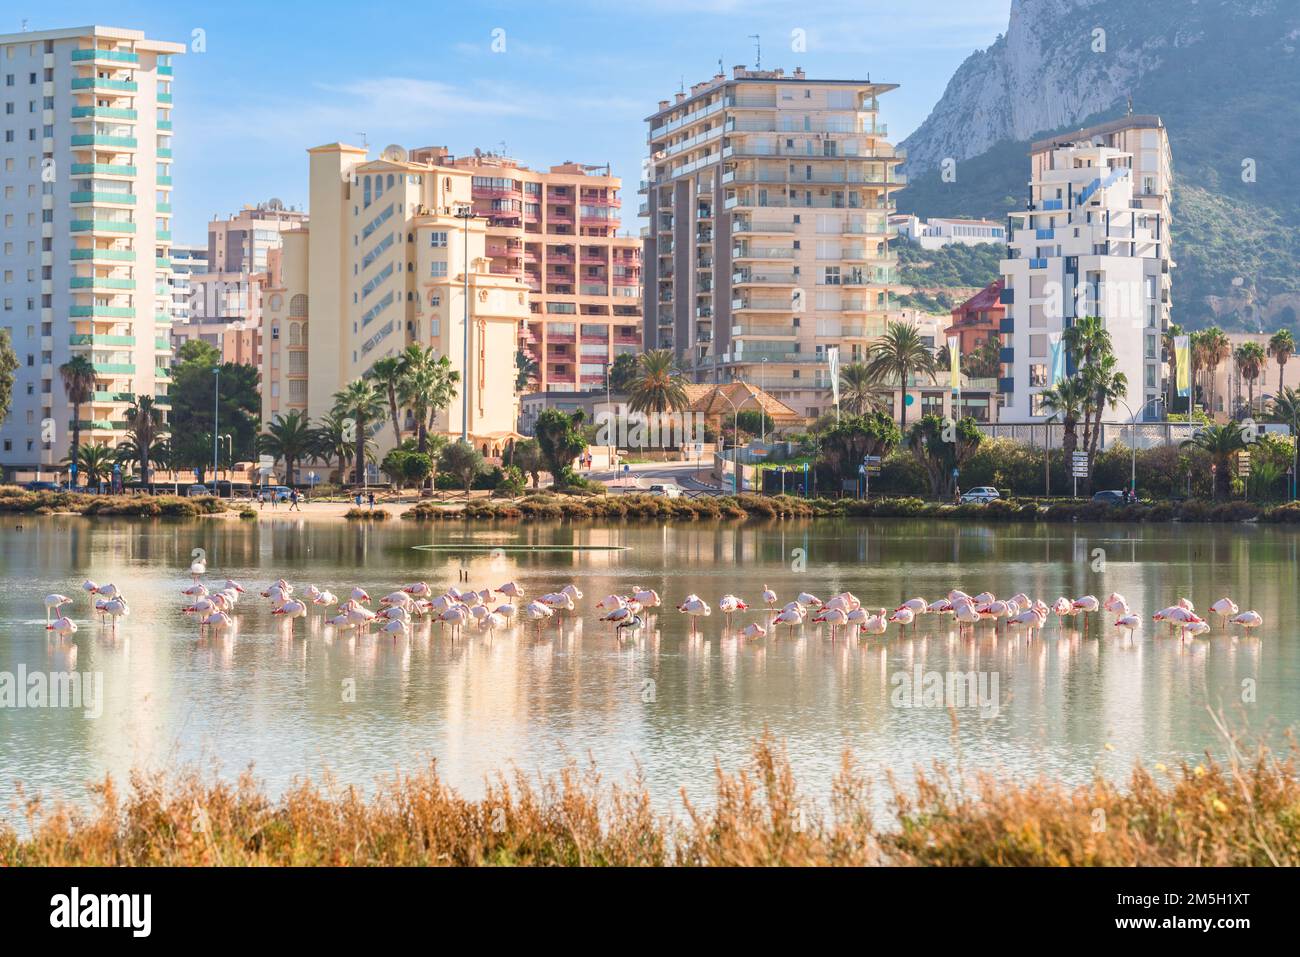 Flamingos in der Stadt. Wildtiere in städtischen Gebieten. Calp, Spanien Stockfoto